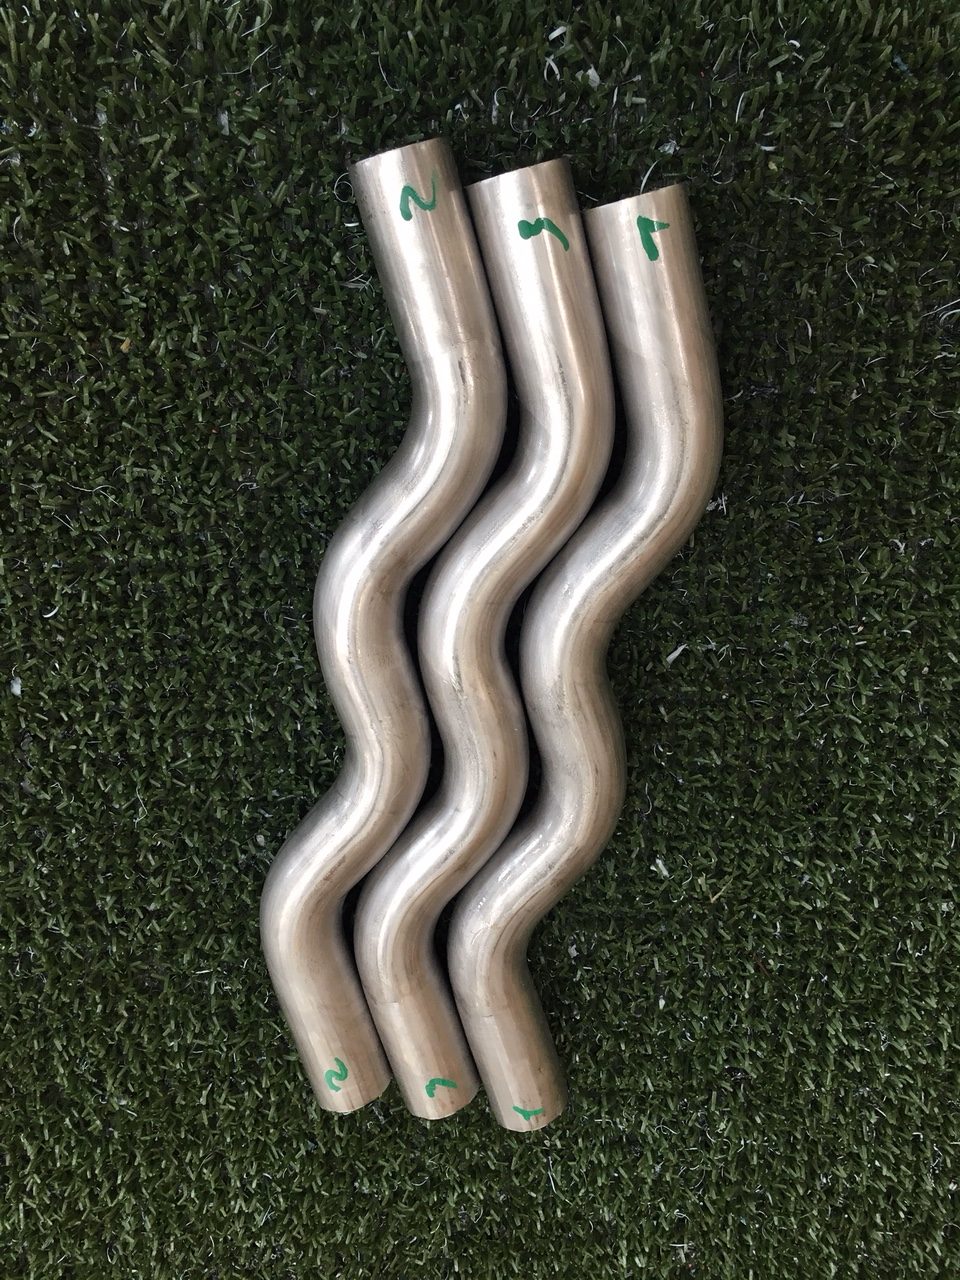 Nell’idroformatura di tubi di piccola dimensione, un trucco è quello di idroformare un serpente!